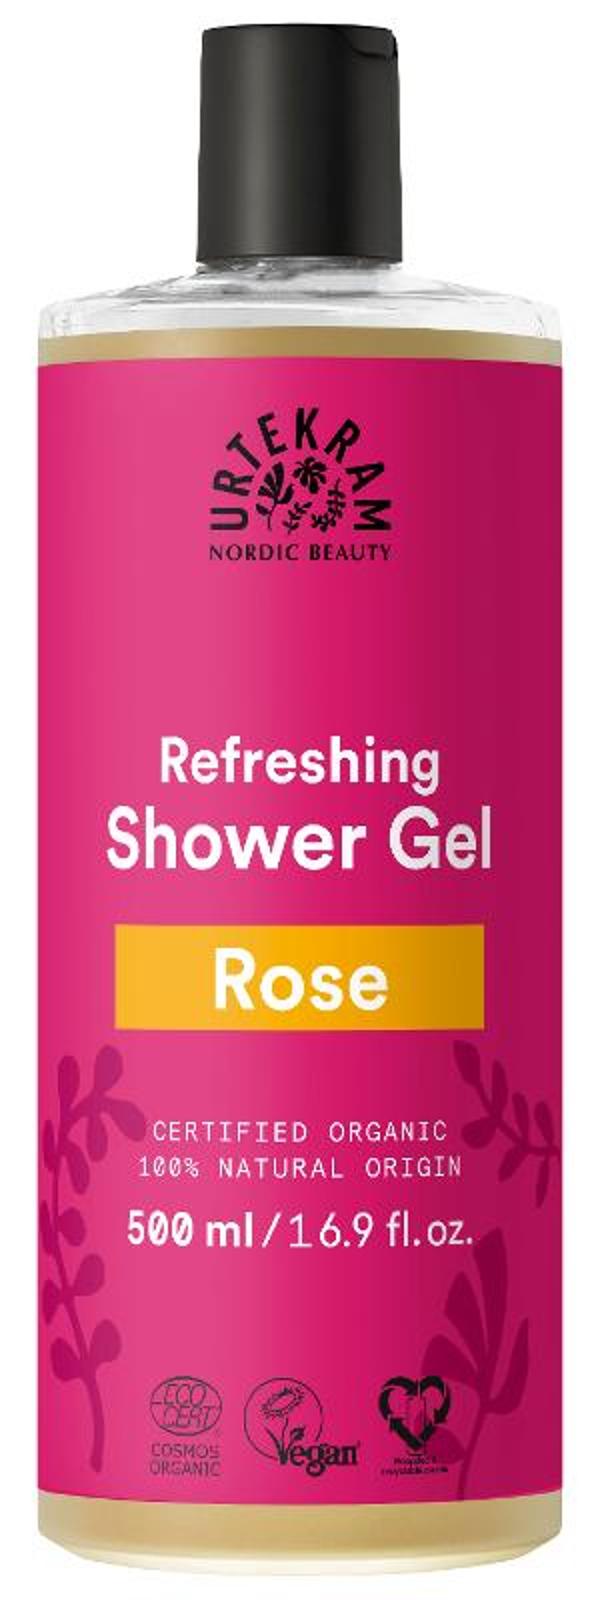 Produktfoto zu Refreshing Shower Gel Rose